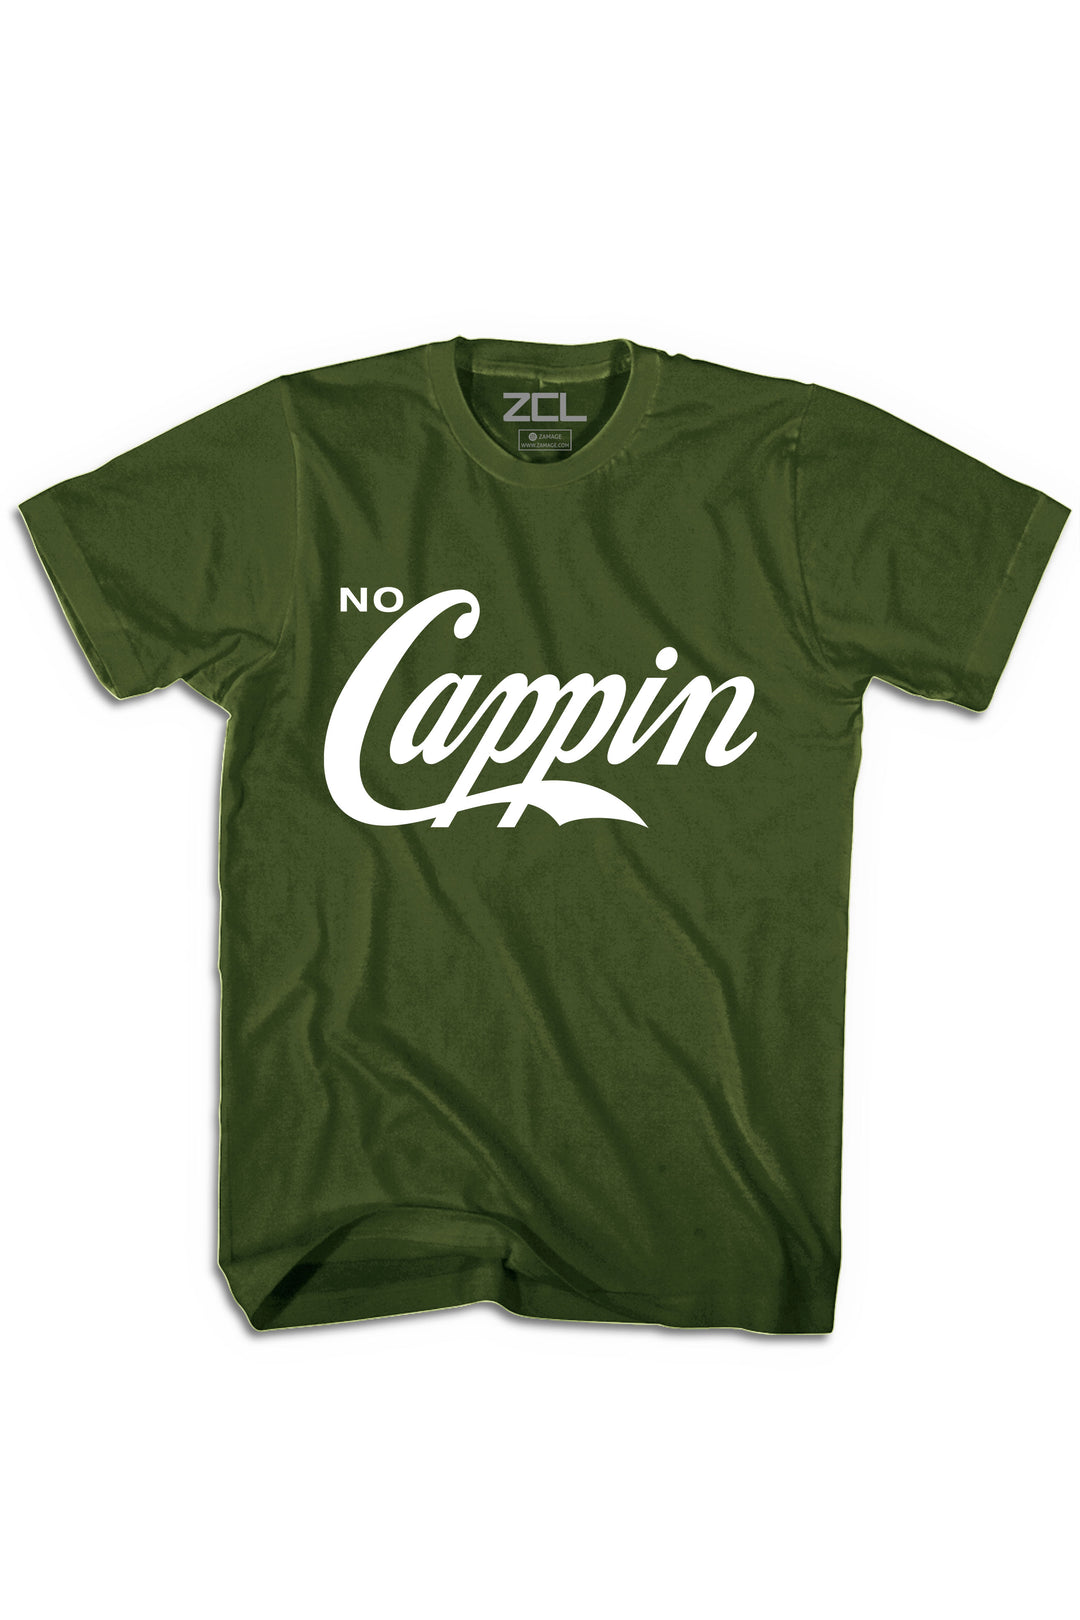 No Cappin Tee (White Logo) - Zamage